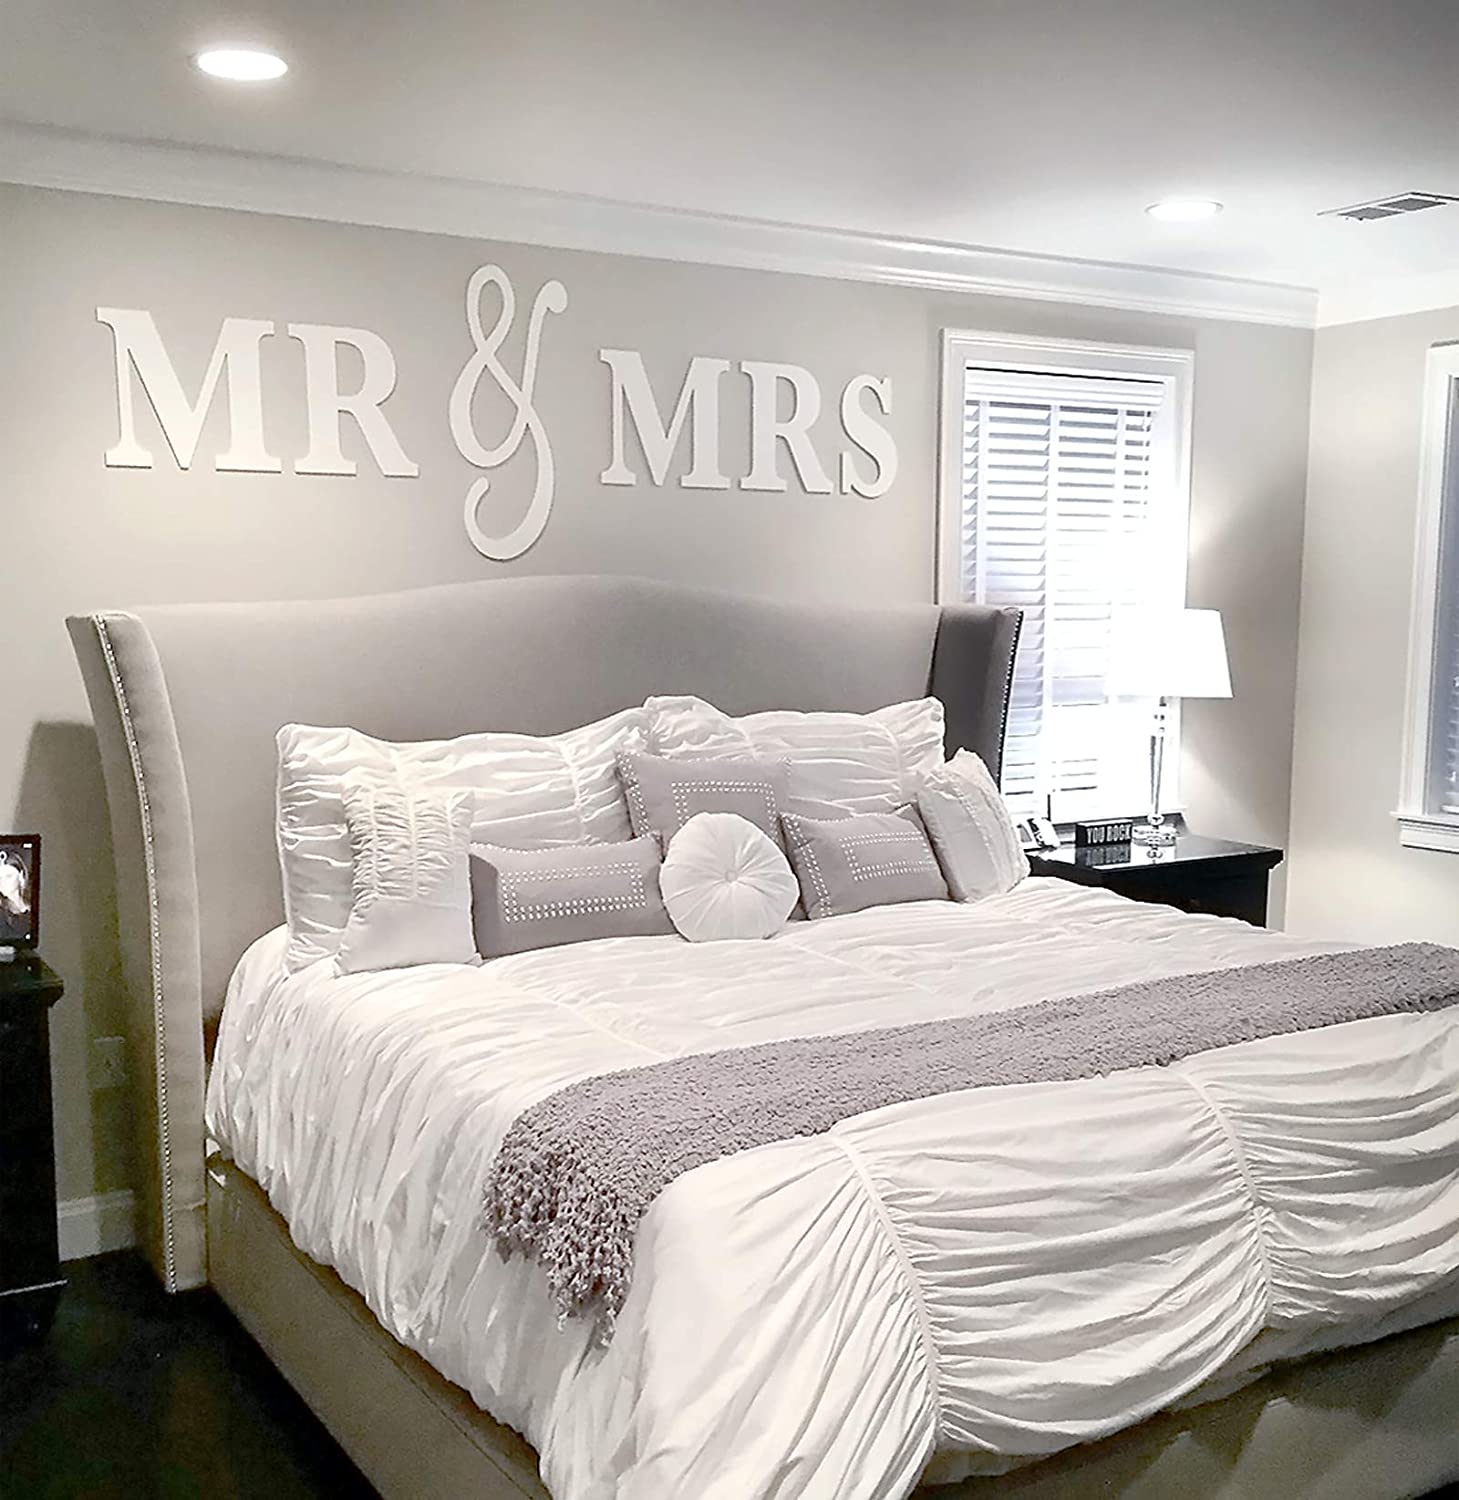 Một số mẹo giúp trang trí phòng ngủ vợ chồng đẹp mắt